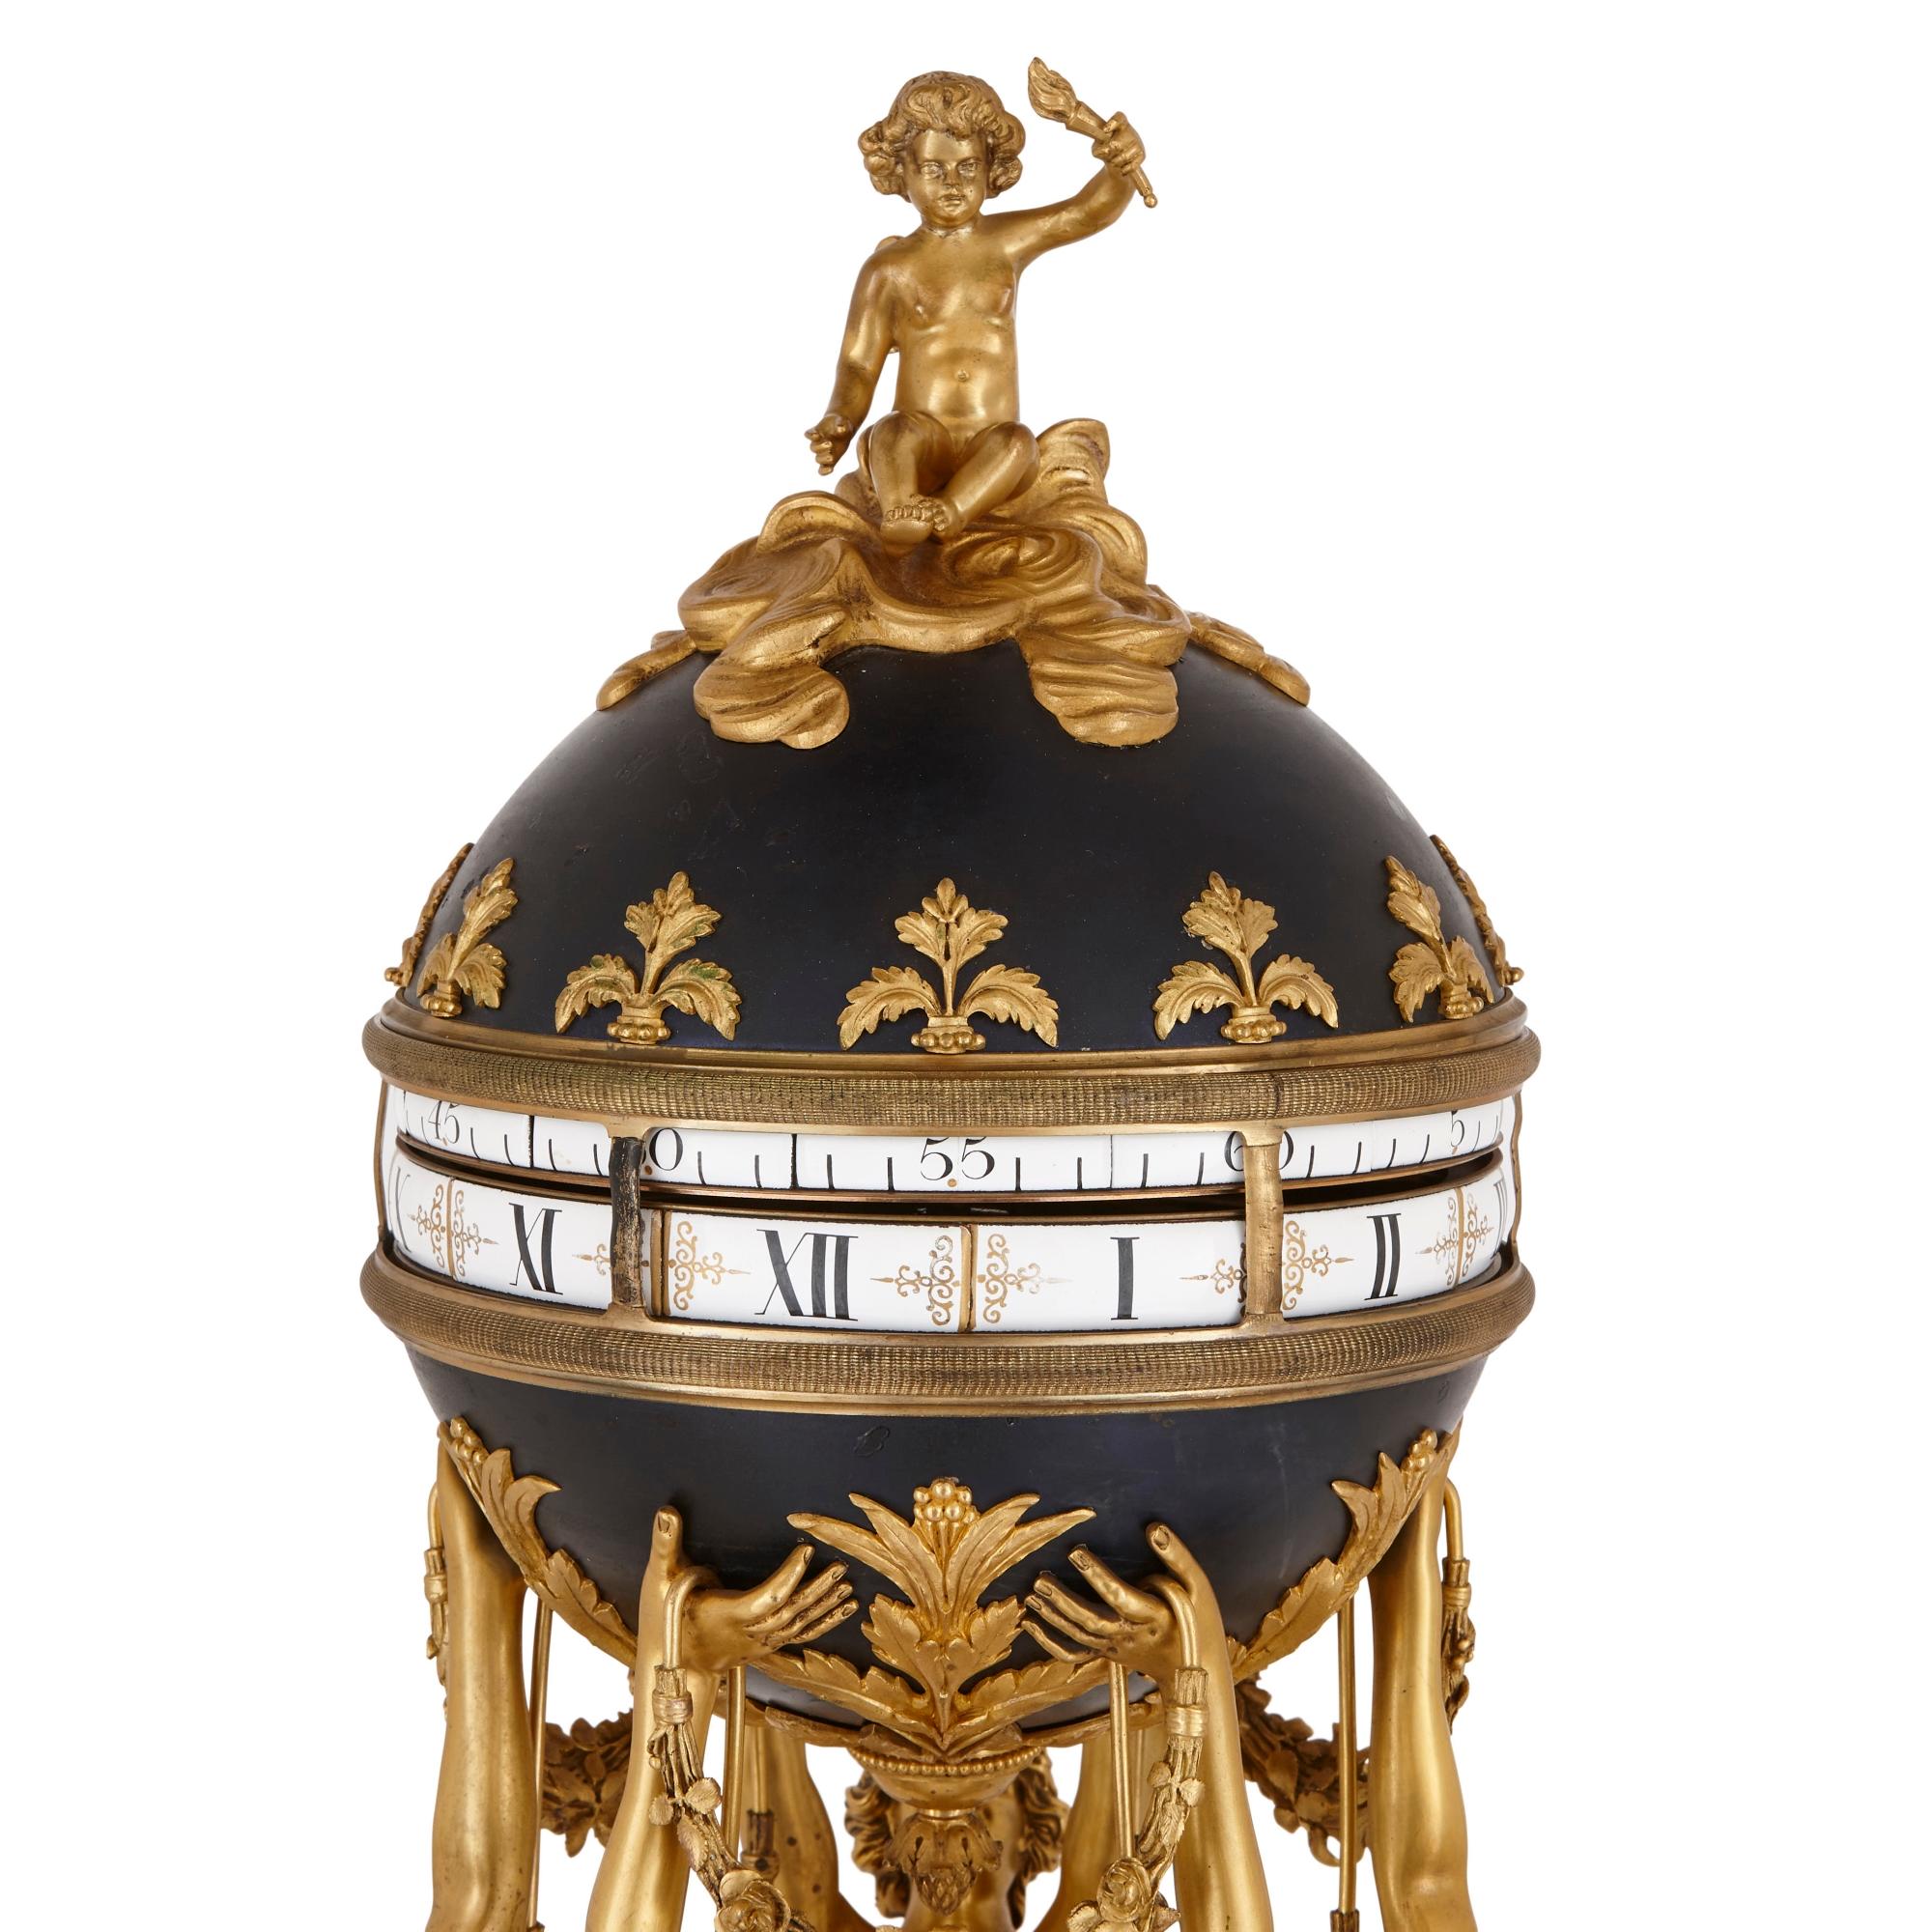 Cette exceptionnelle pendule de cheminée a été créée au début du XXe siècle en France, en s'inspirant d'un modèle du XVIIIe siècle réalisé par le célèbre ferronnier François Vion (français, 1737-1790). Le design de l'horloge comprend des sculptures